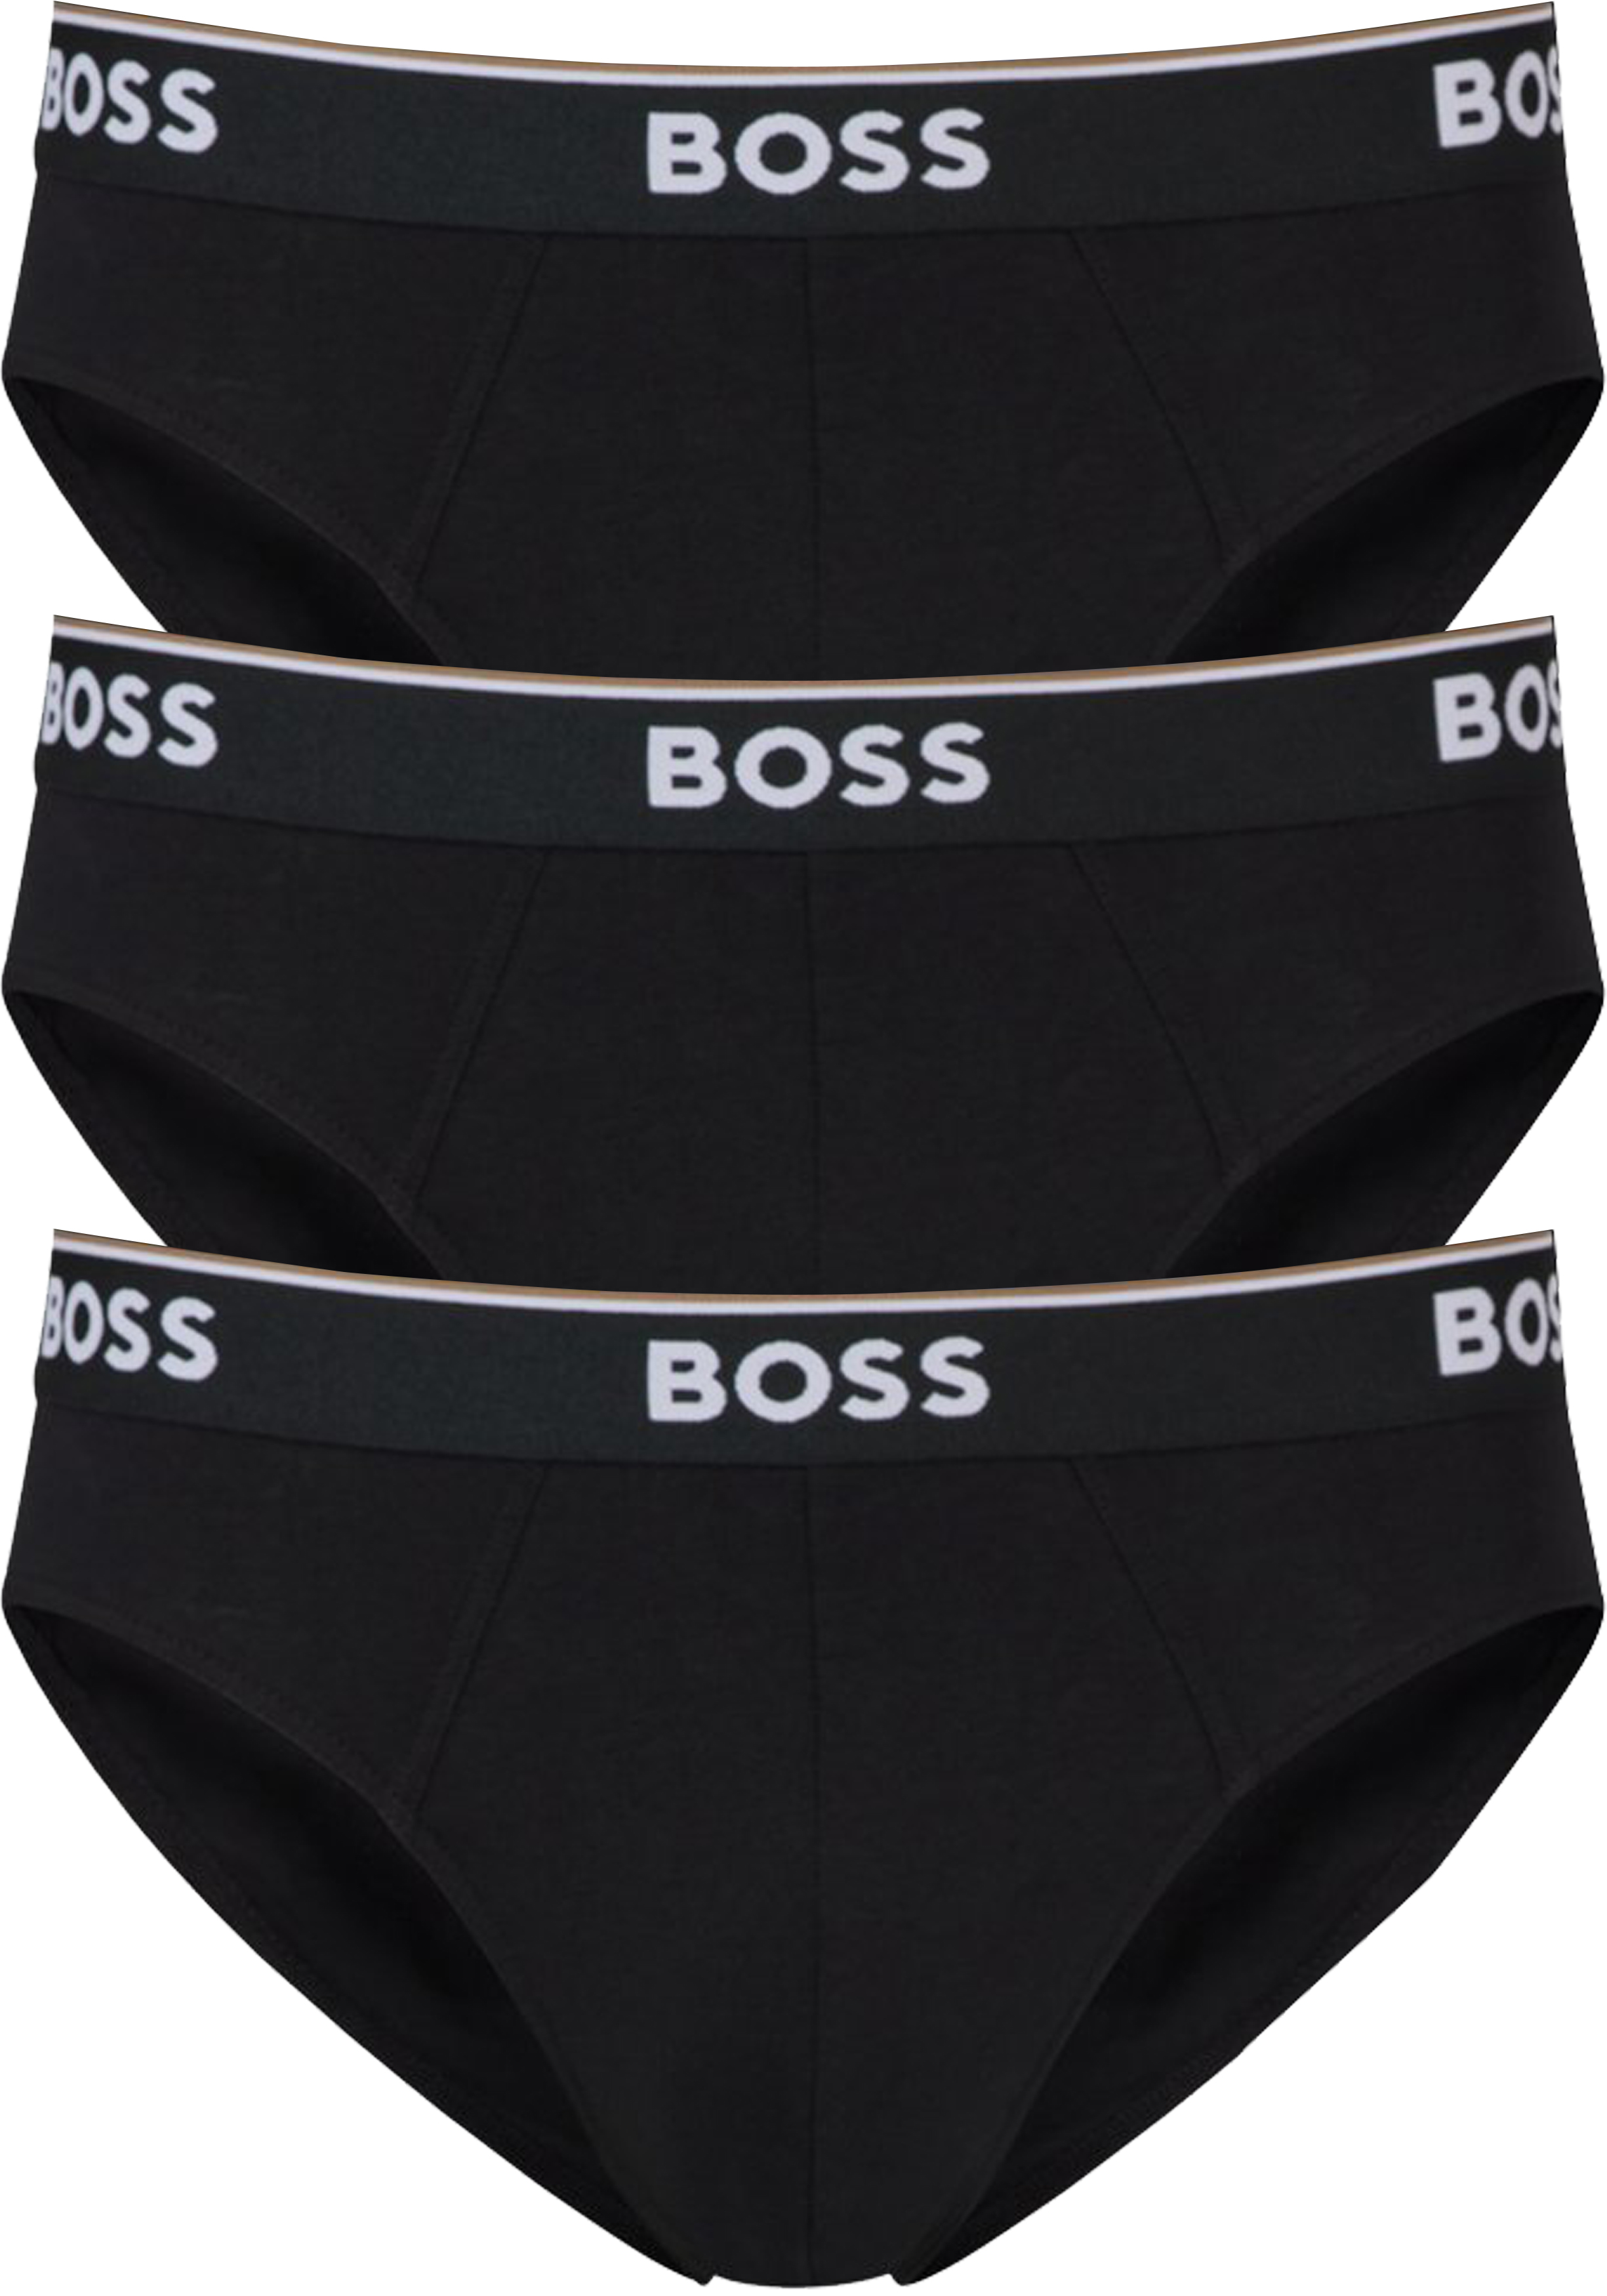 HUGO BOSS Power briefs (3-pack), heren slips, zwart